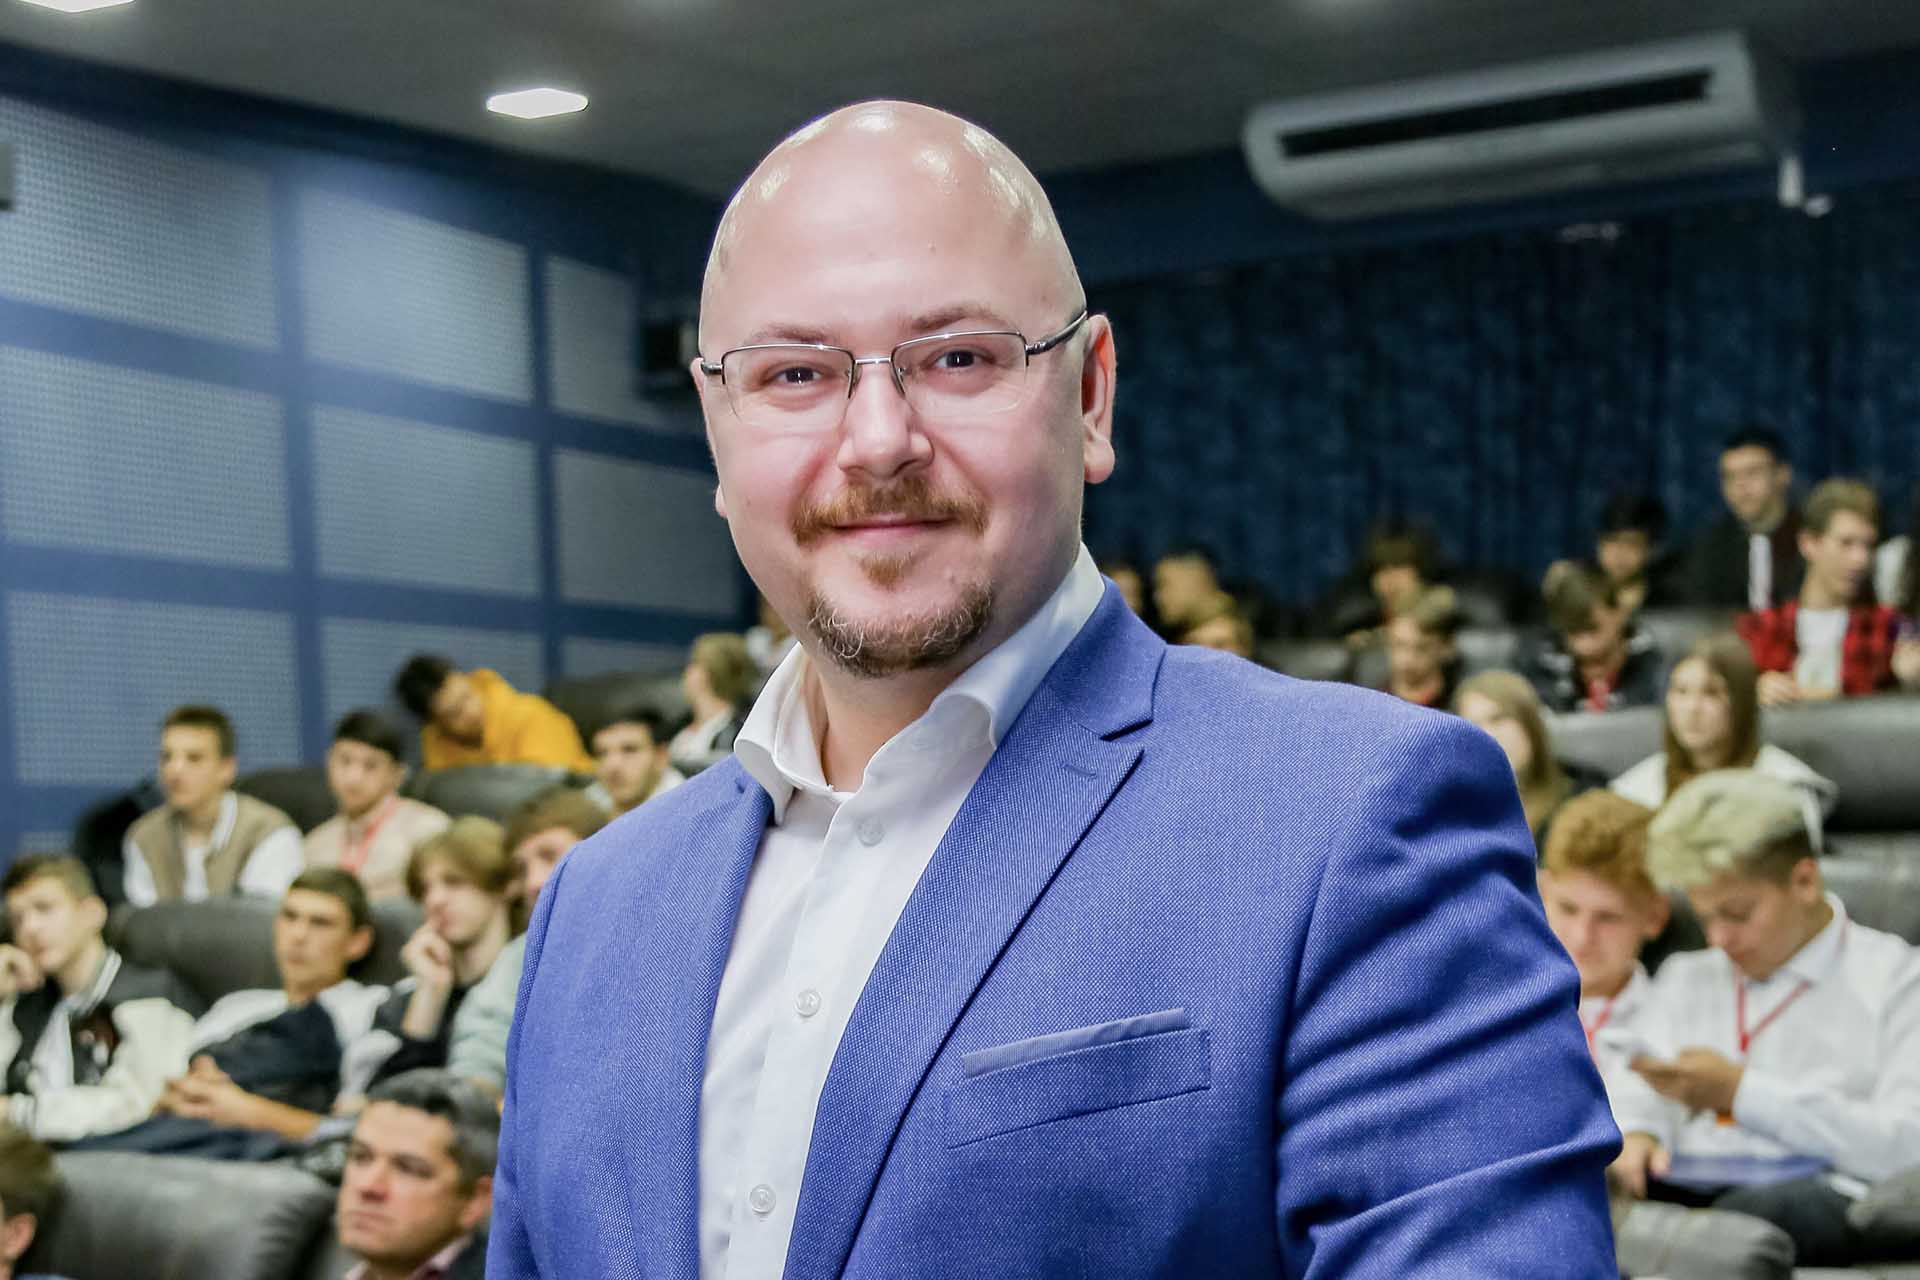 Васьков Владимир - предприниматель и владелец консалтингового агентства «VASKOV CONSULTING»